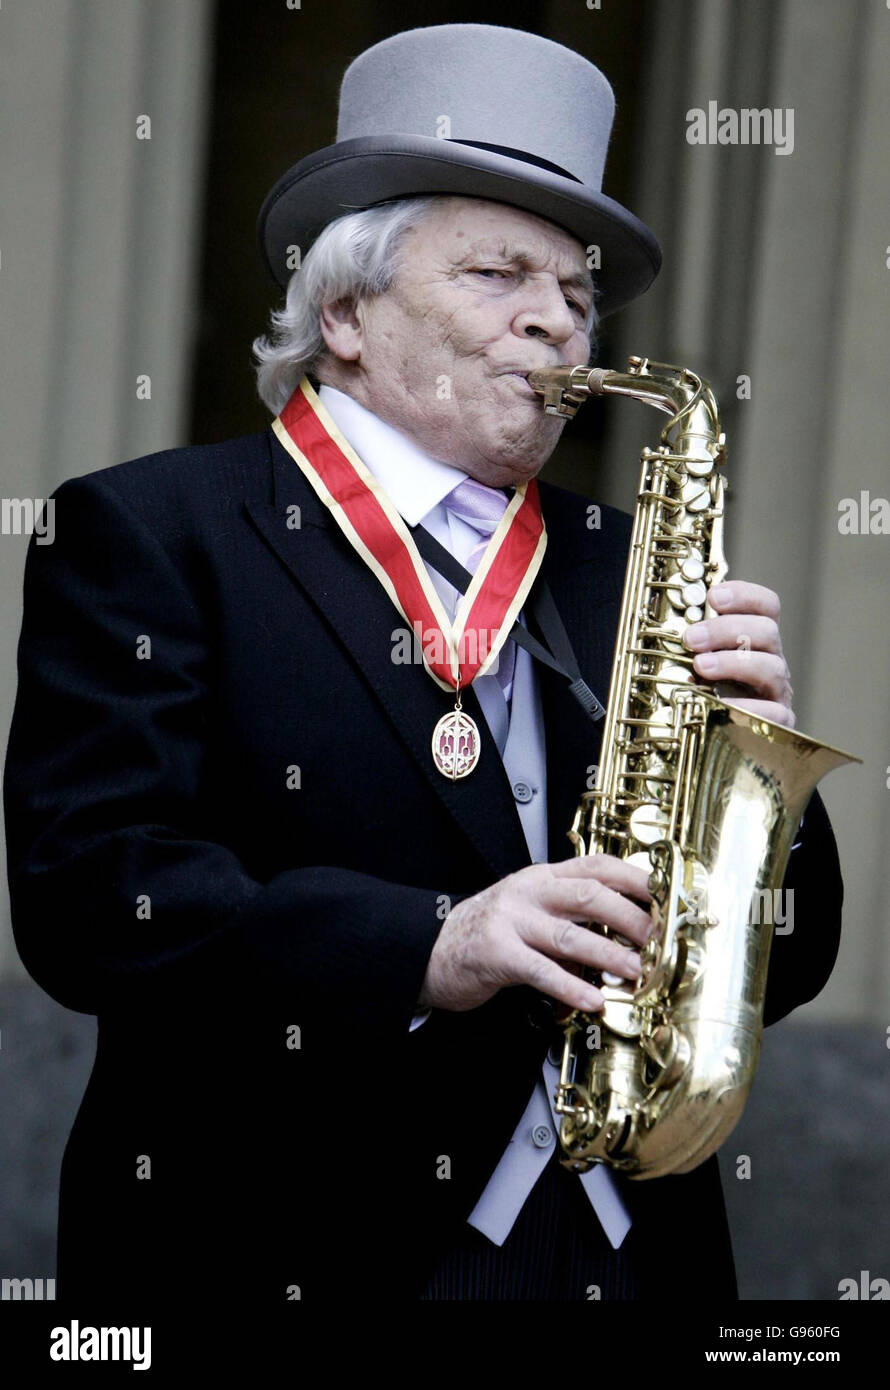 John Dankworth joue son saxophone au Palais de Buckingham, Londres, le jeudi 2 mars 2006, après avoir reçu un chevalier de la reine Elizabeth II de Grande-Bretagne Voir PA Story ROYAL investiture. APPUYEZ SUR ASSOCIATION photo. Le crédit photo devrait se lire : Andrew Parsons/WPA rota/PA. Banque D'Images